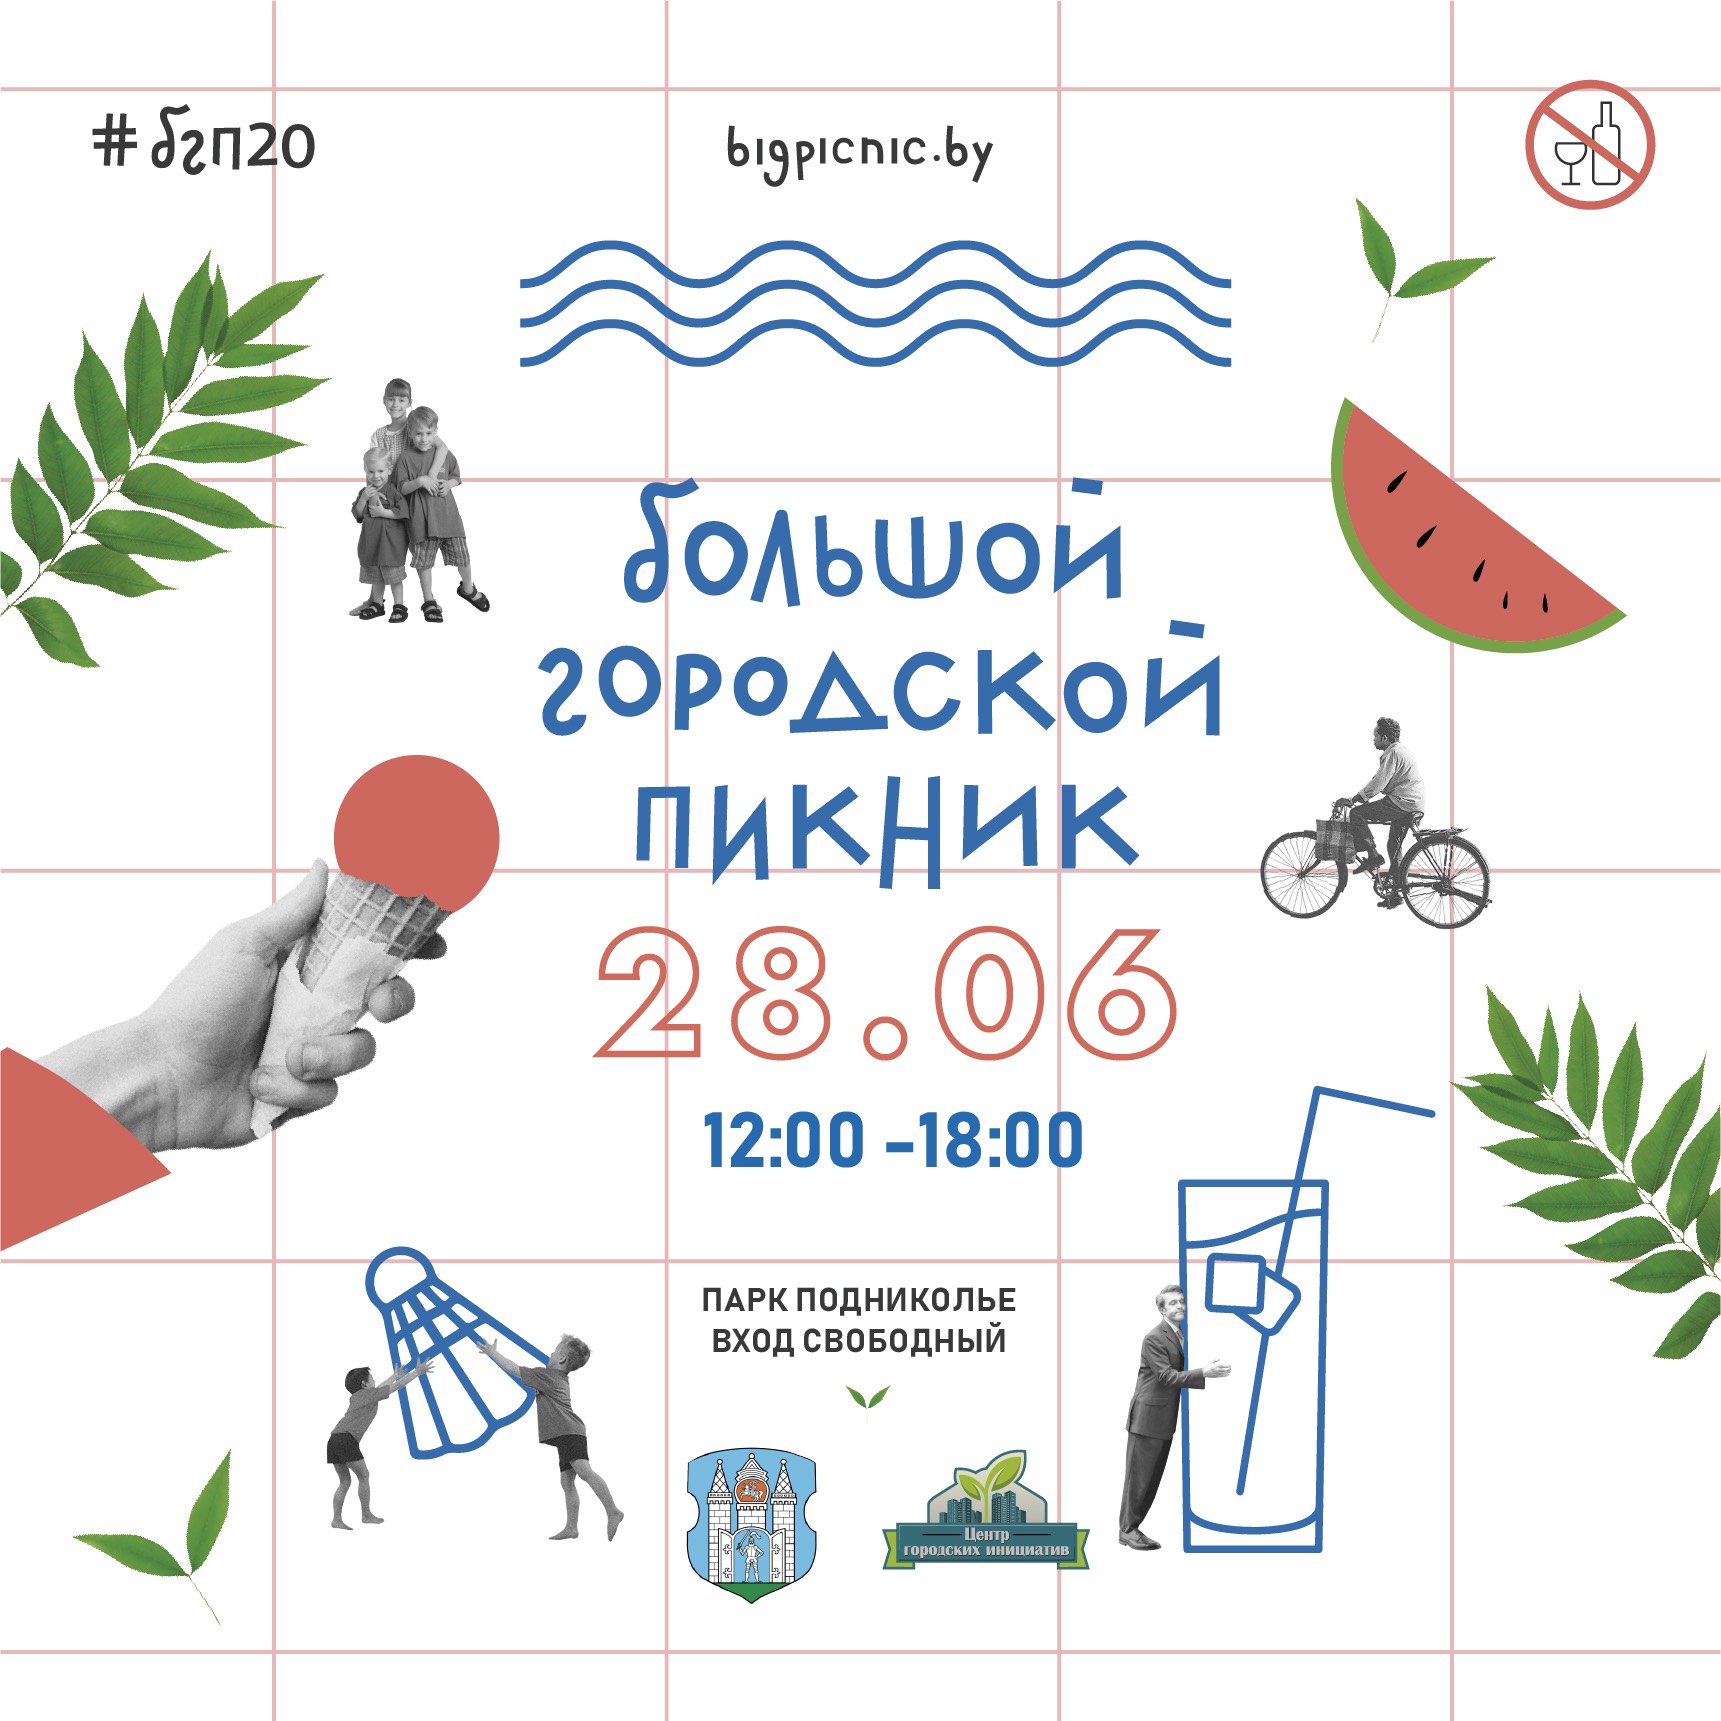 Большой городской пикник пройдет в Могилеве 28 июня